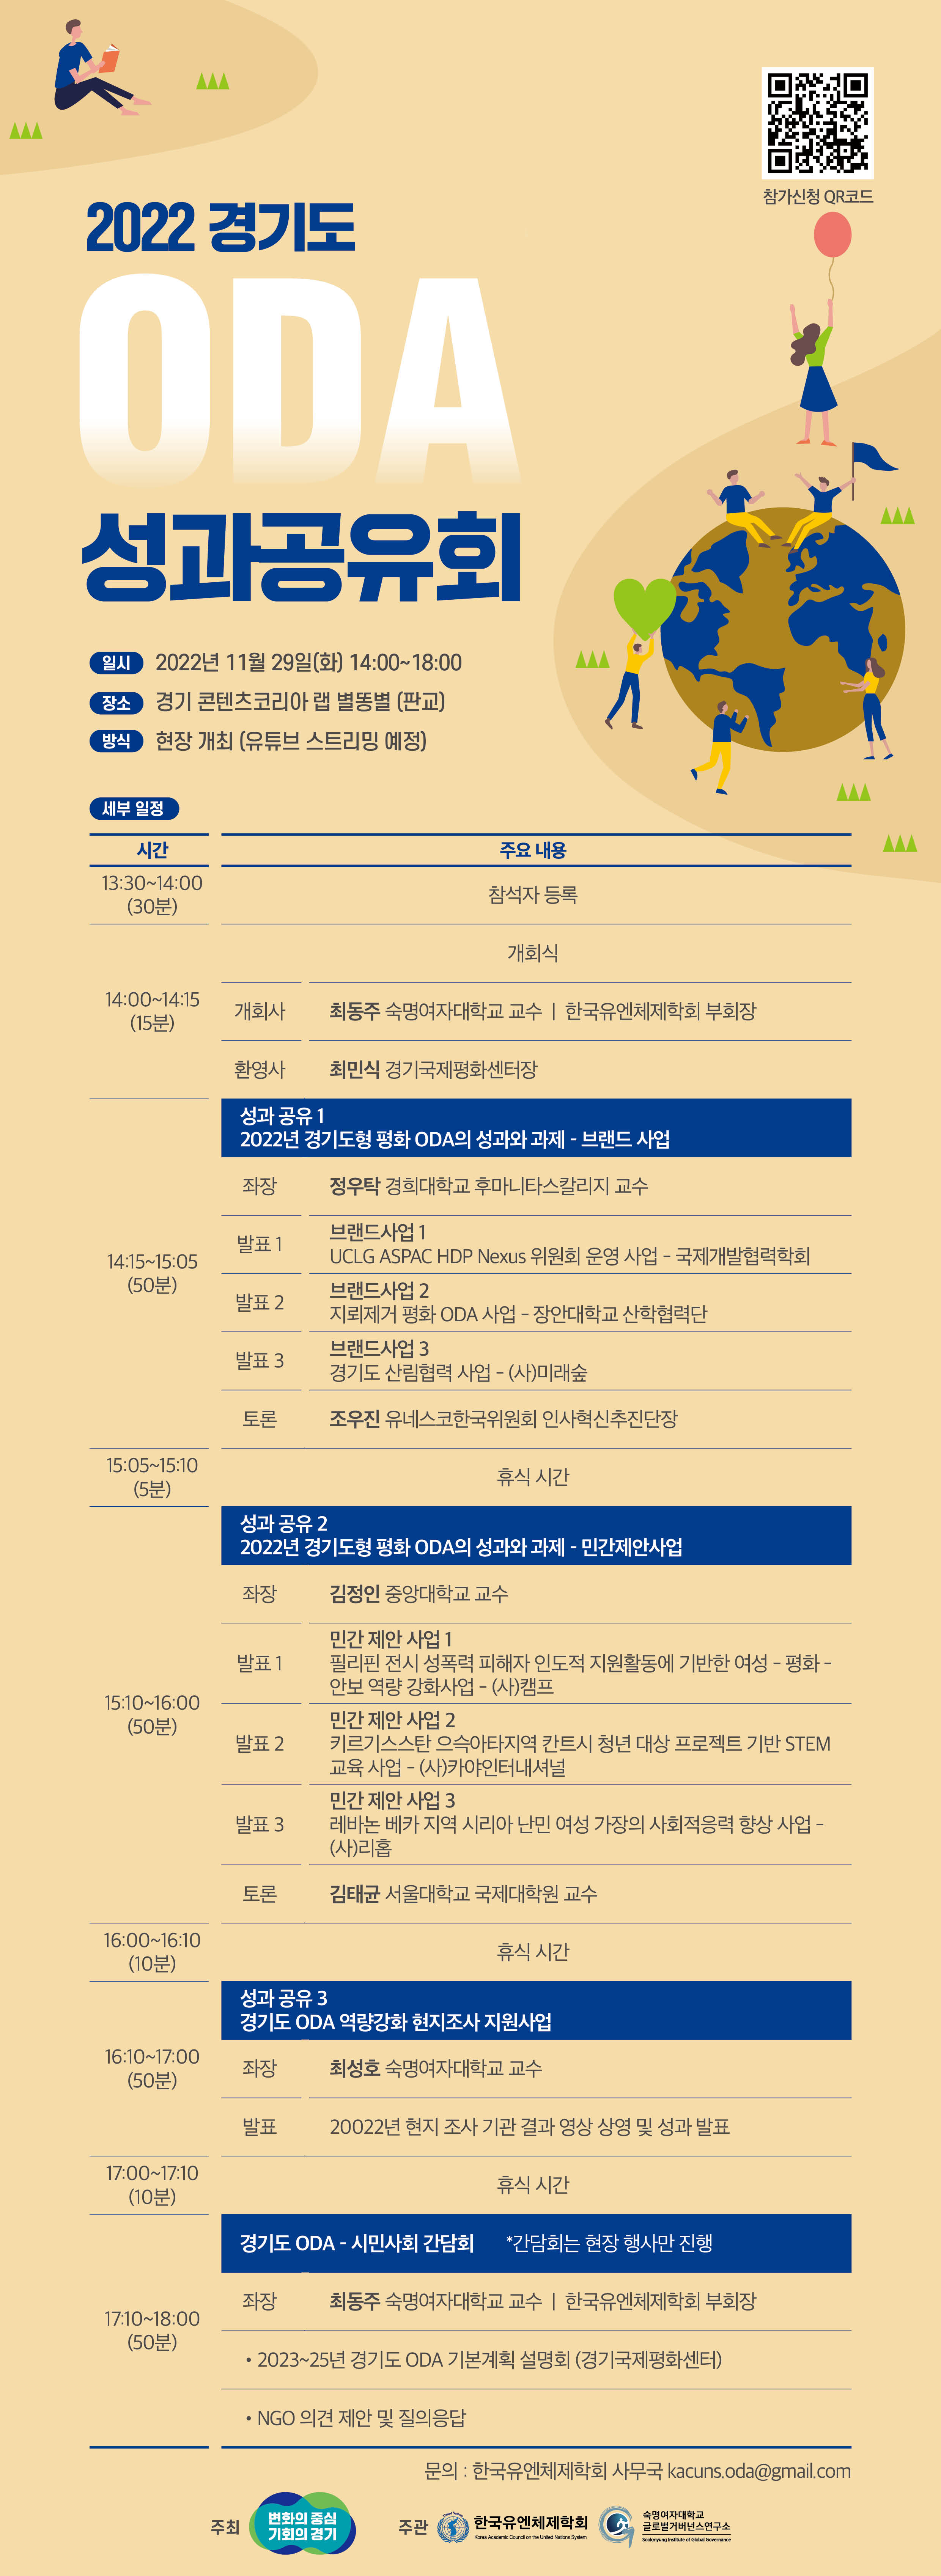 경기도 ODA 성과공유회 개최 (11/29(화), 14:~18:00, 경기 콘텐츠코리아 랩 별똥별)  